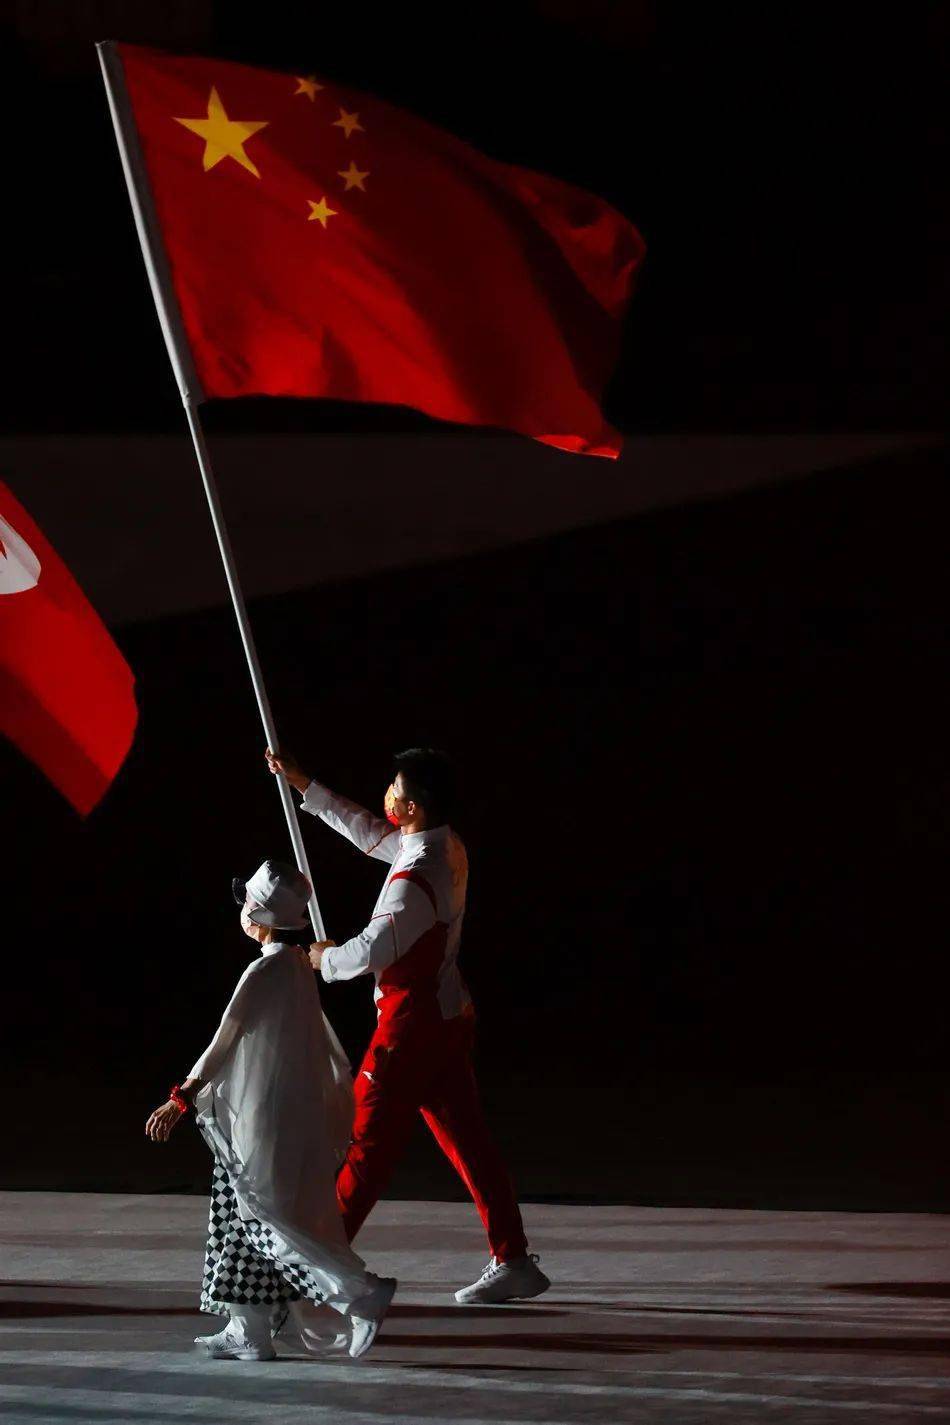 中国国旗奥运会图片